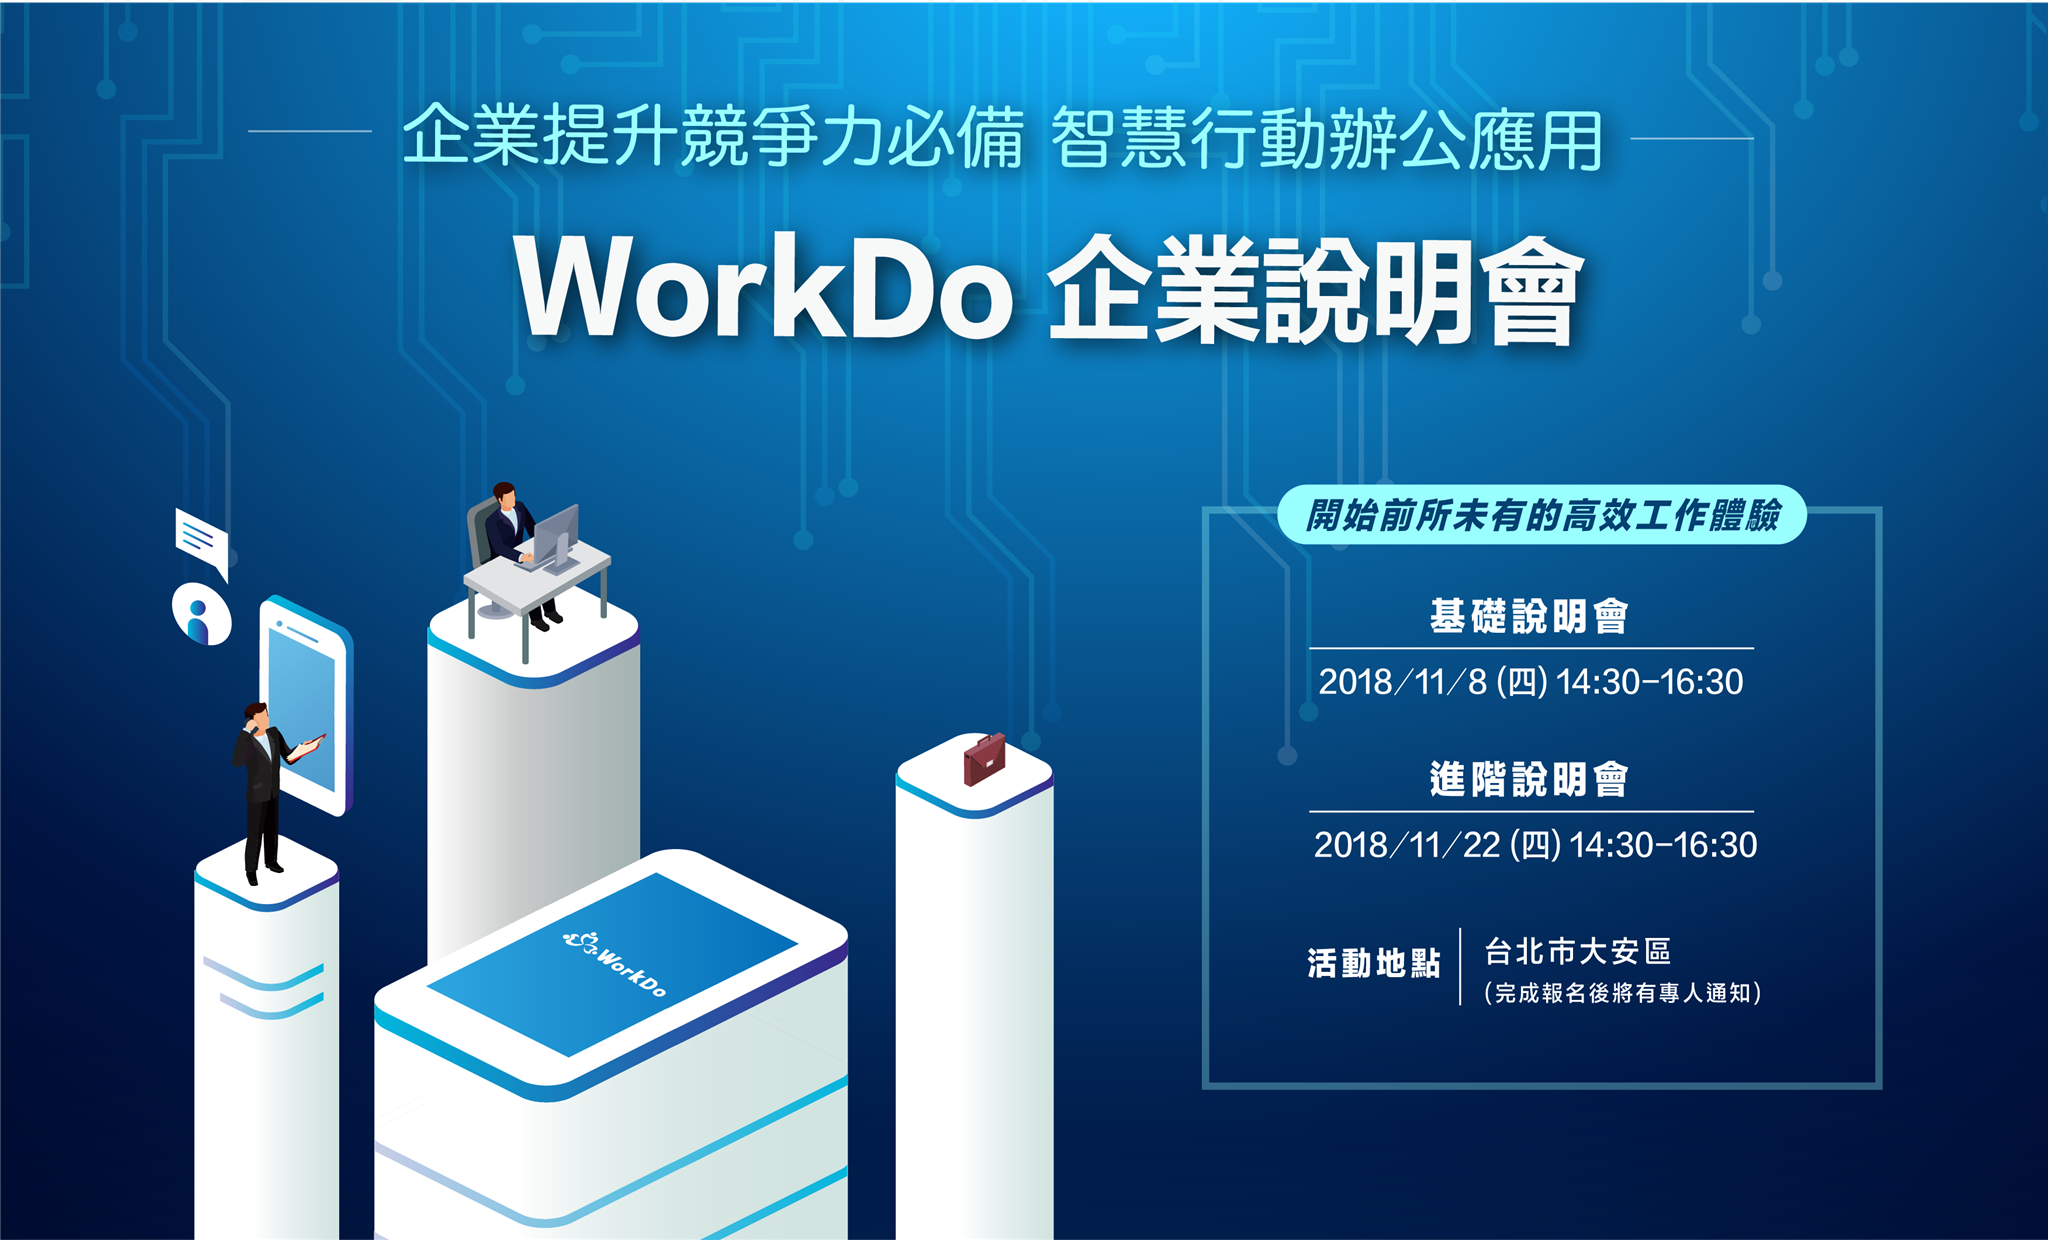 WorkDo,企業協作,行動辦公,企業說明會